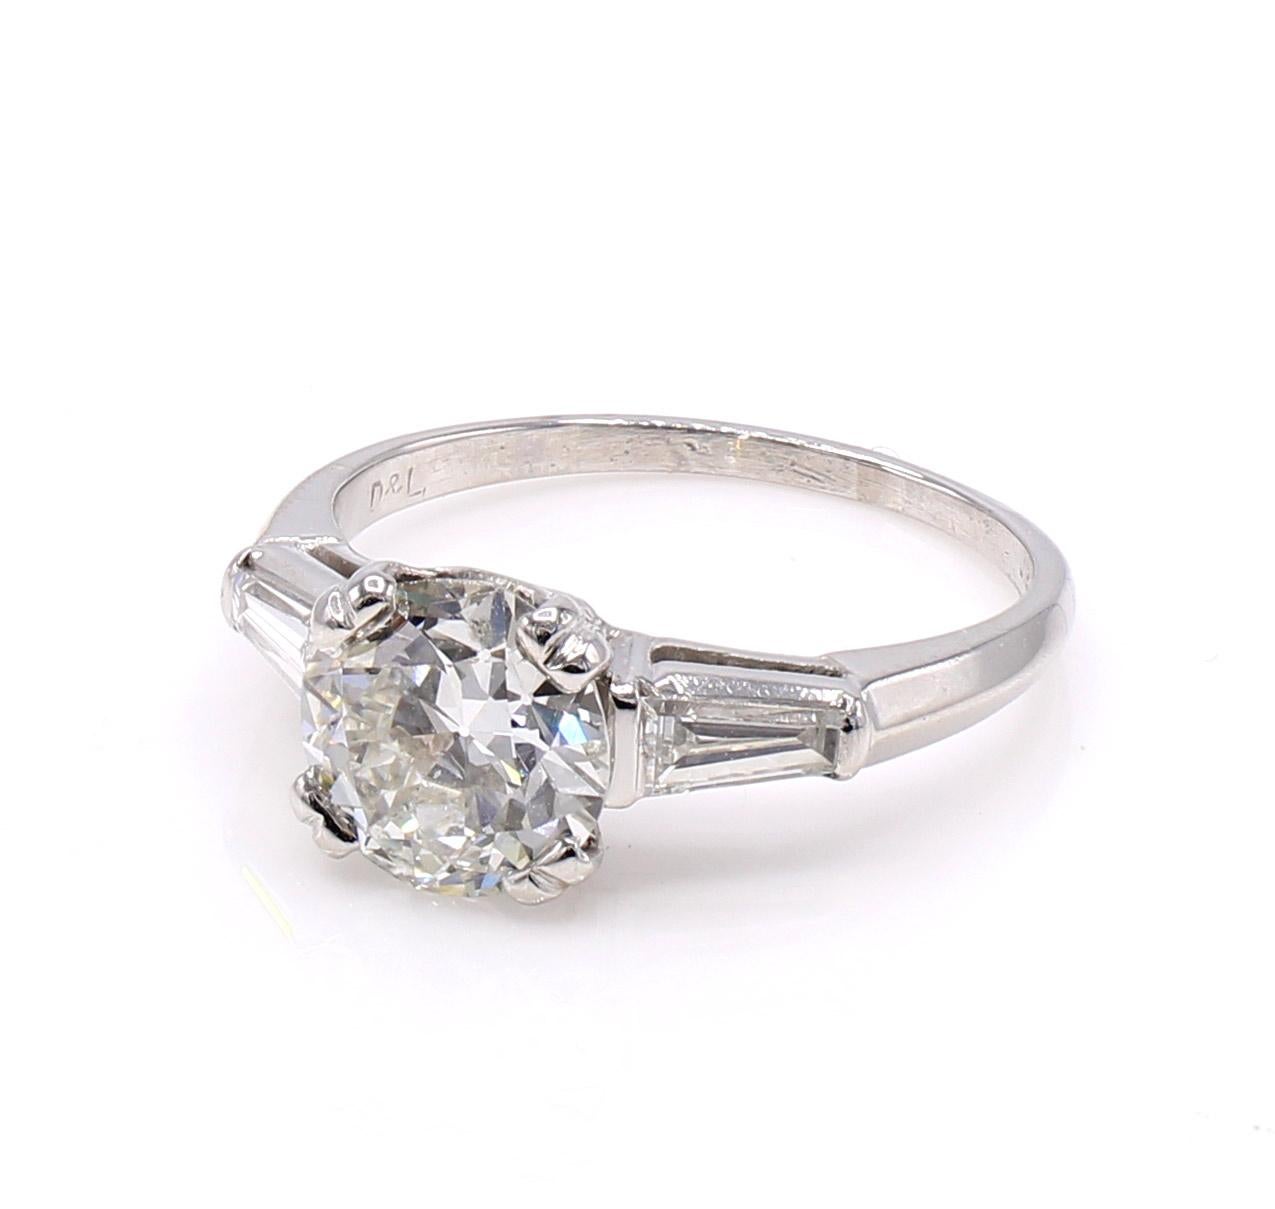 Magnifique diamant de taille ancienne, vif et brillant, serti dans une monture en platine fabriquée à la main et rehaussée de deux baguettes effilées d'un blanc éclatant de part et d'autre de la tige. Le diamant de taille européenne ancienne, pesant